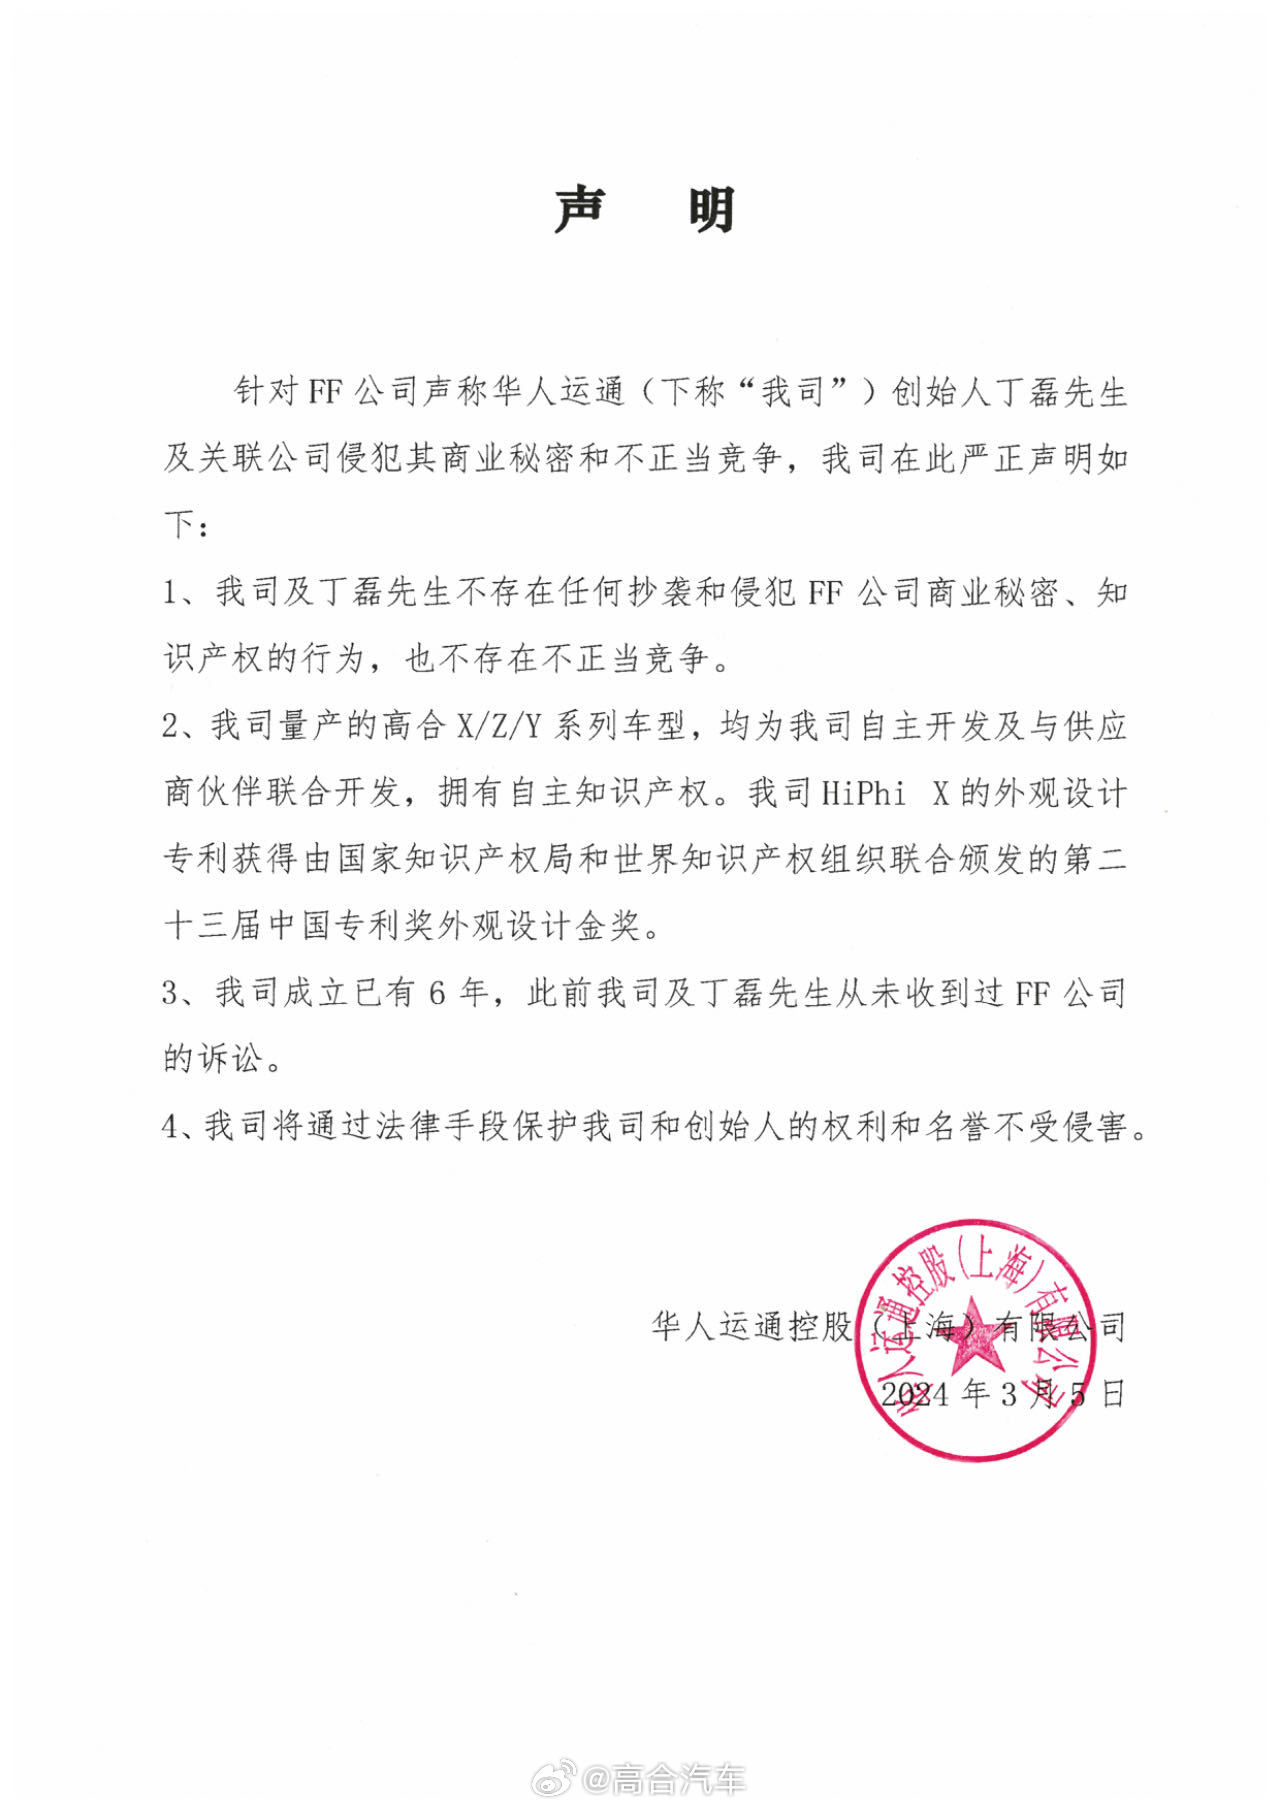 高合创始人丁磊回应 FF 起诉：将起诉贾跃亭侵犯名誉权